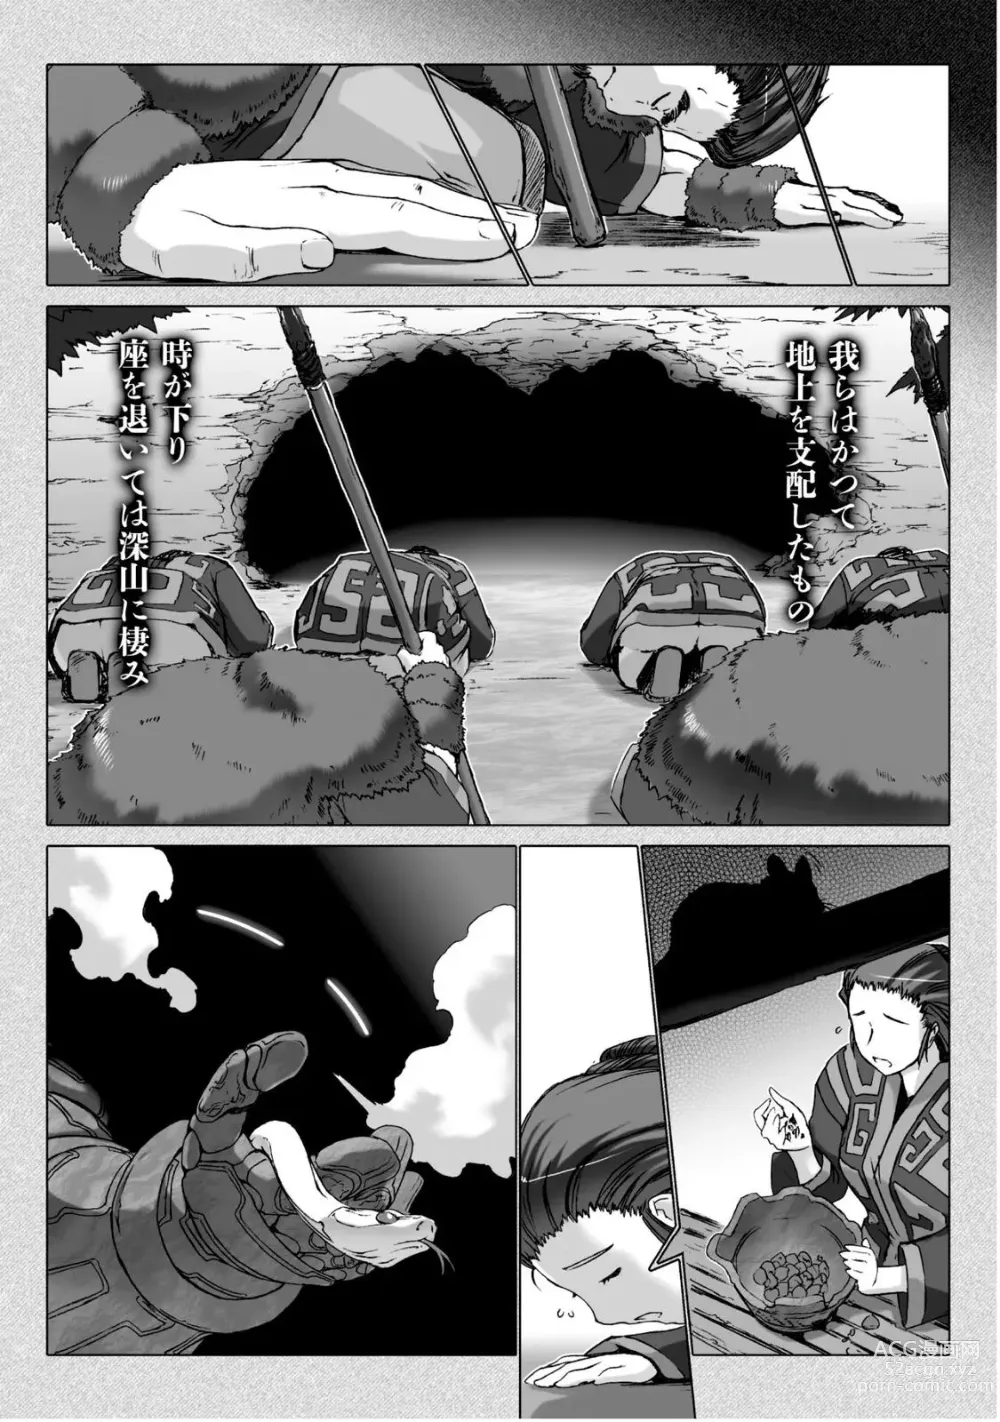 Page 183 of manga Ziggurat 5